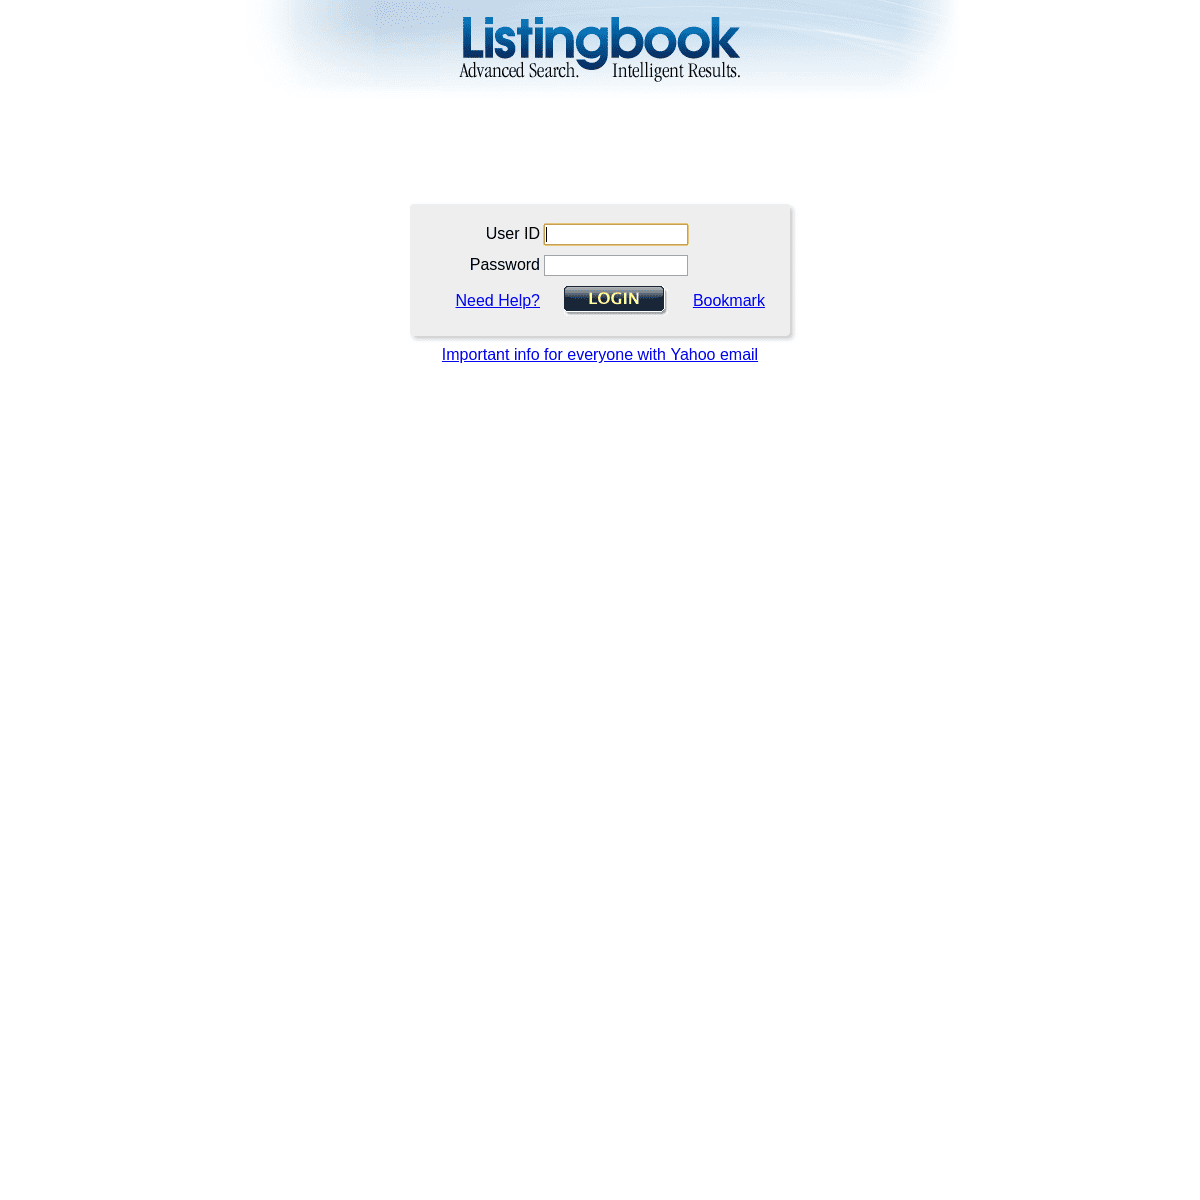 Listingbook.com